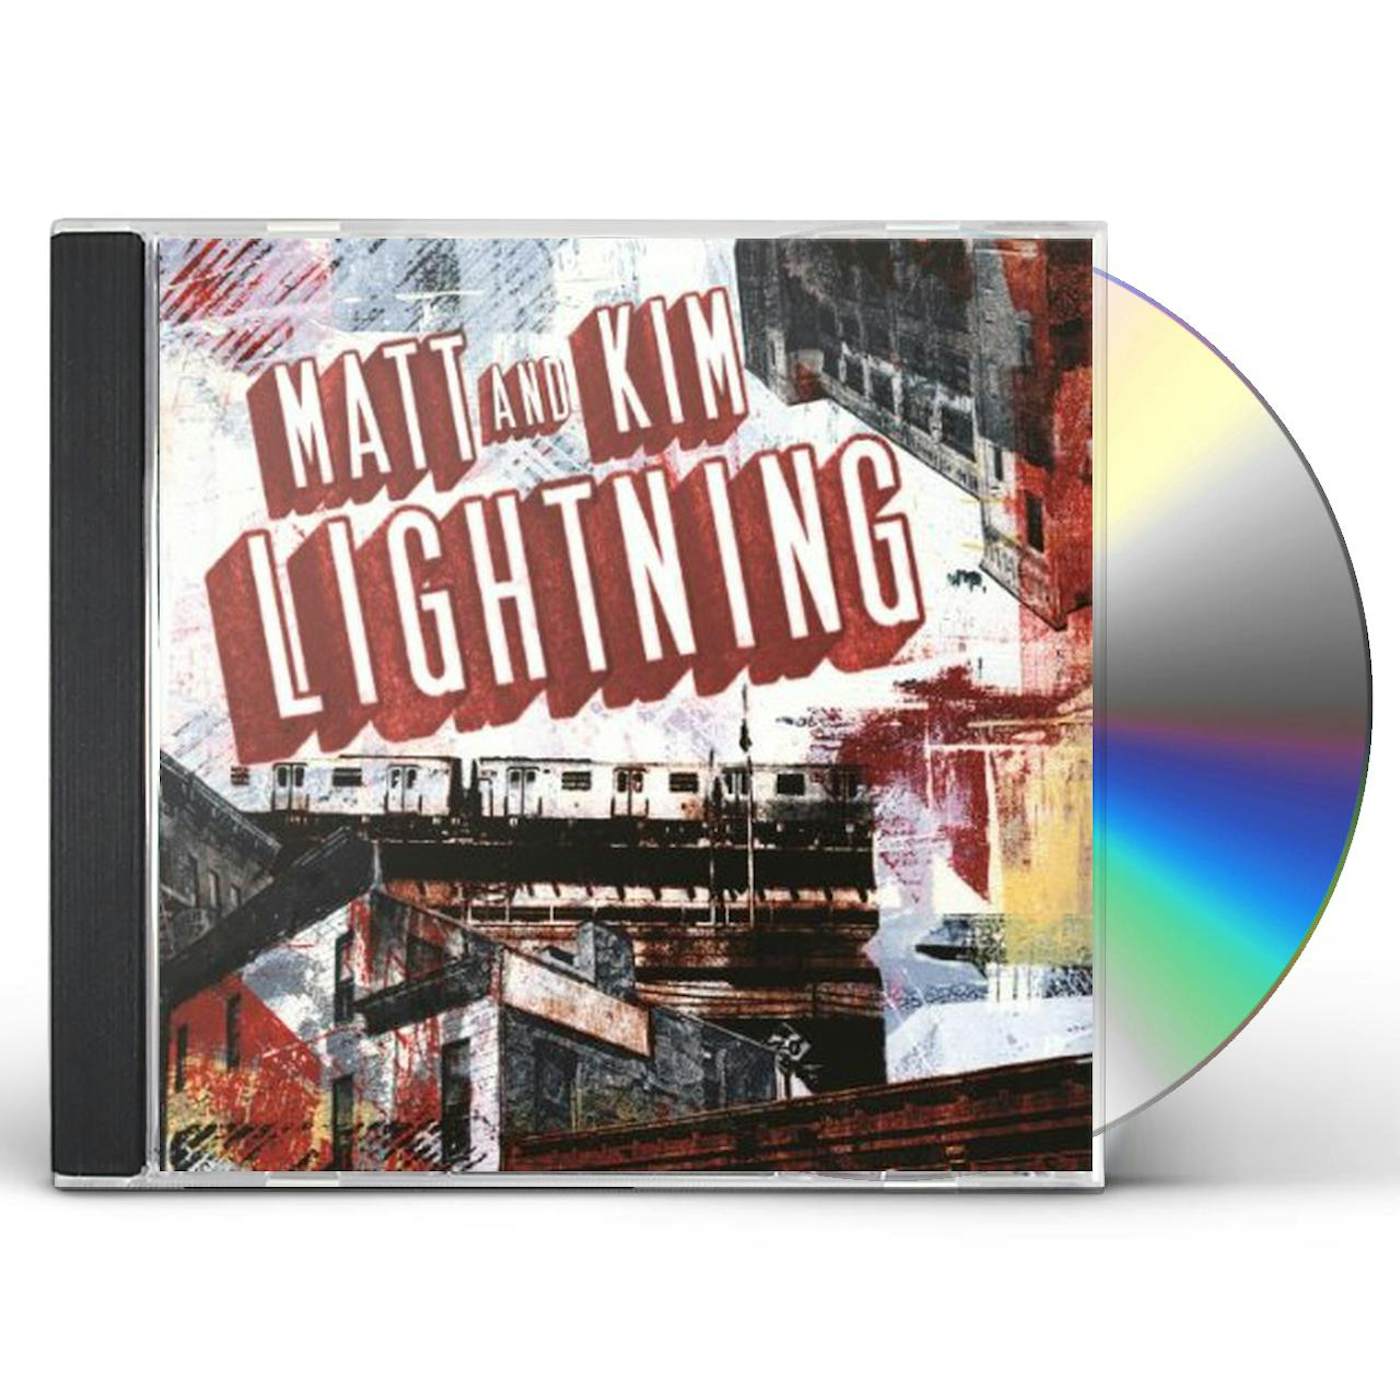 Matt and Kim LIGHTNING CD